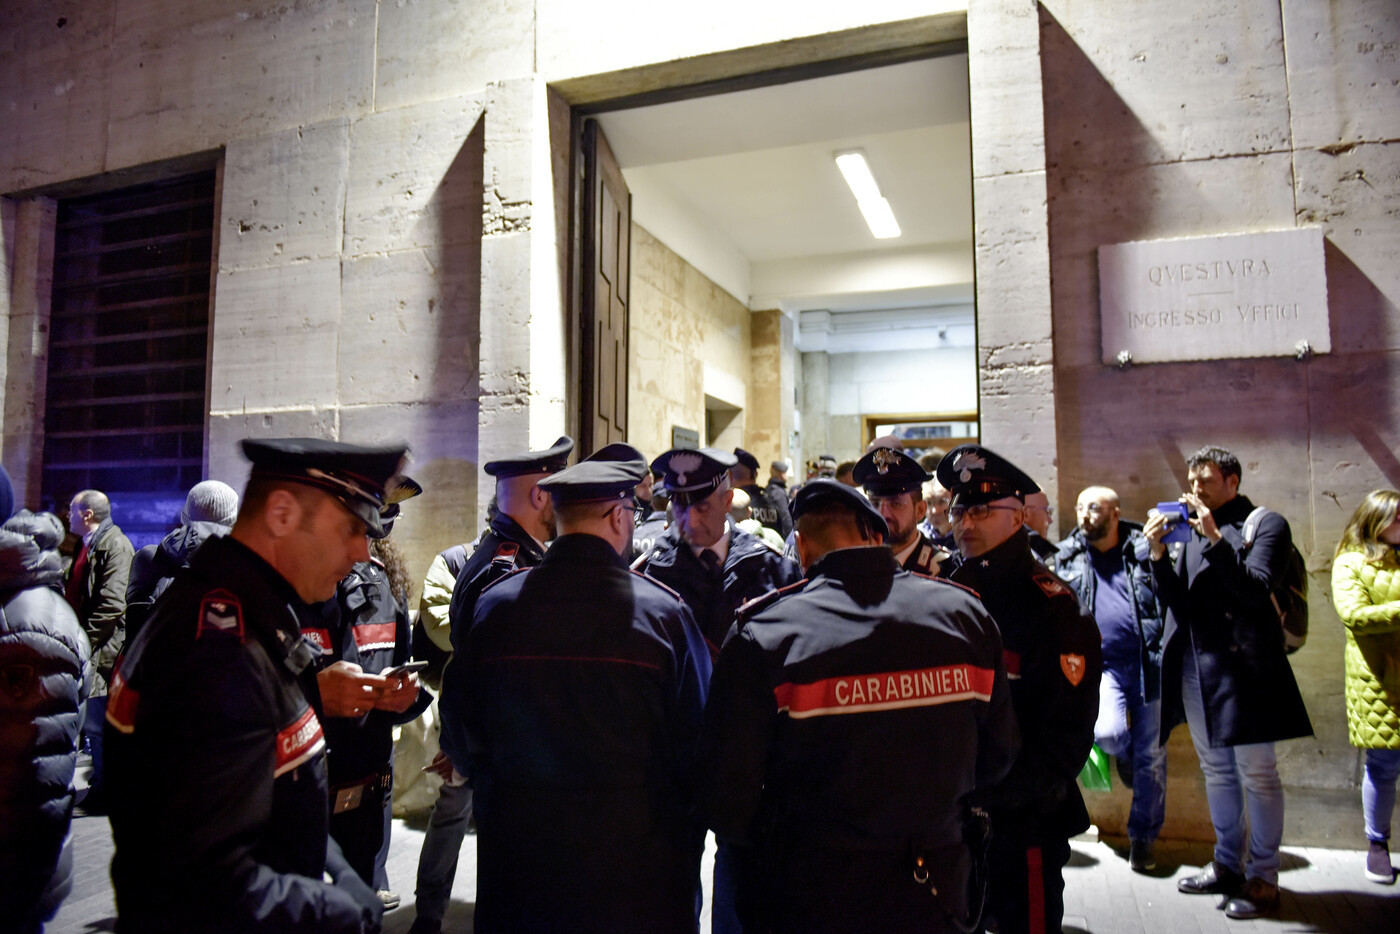 Il figlio del boss contro la camorra: “Salvini parli con meno arroganza e venga a Napoli”